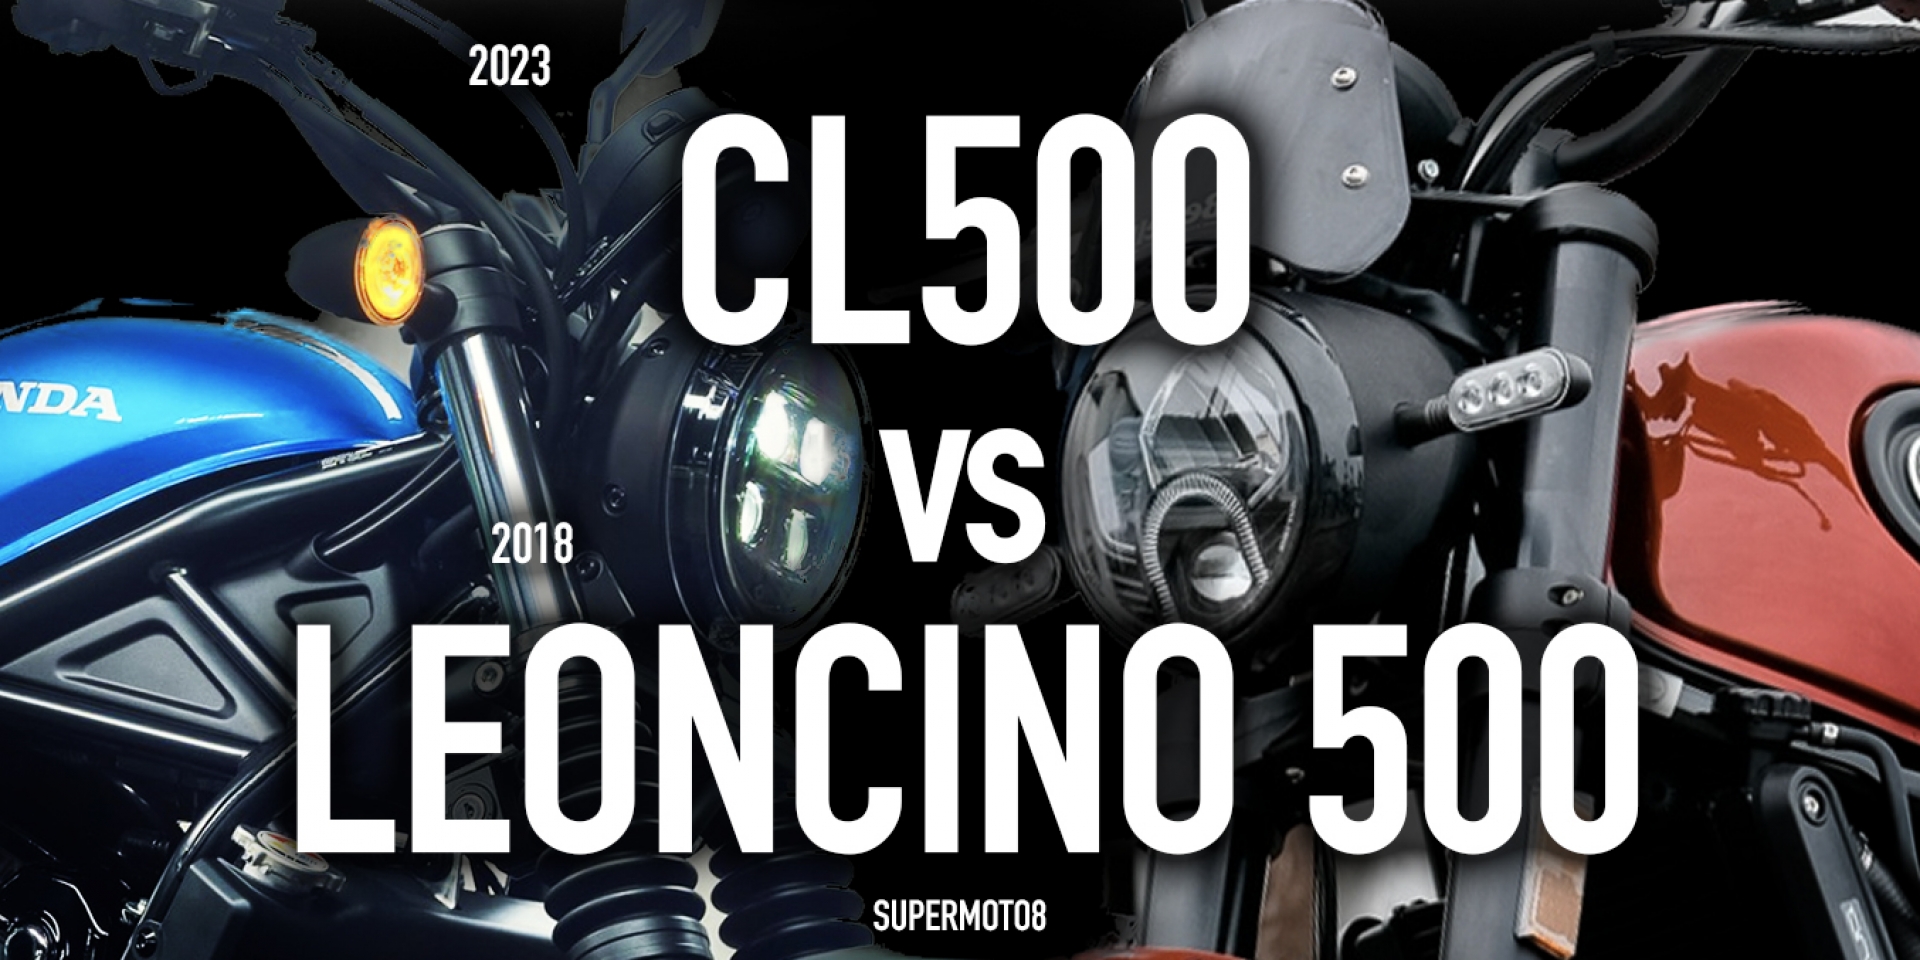 都會越野輕騎之戰。HONDA CL500 vs Benelli Leoncino 500 紙上PK !